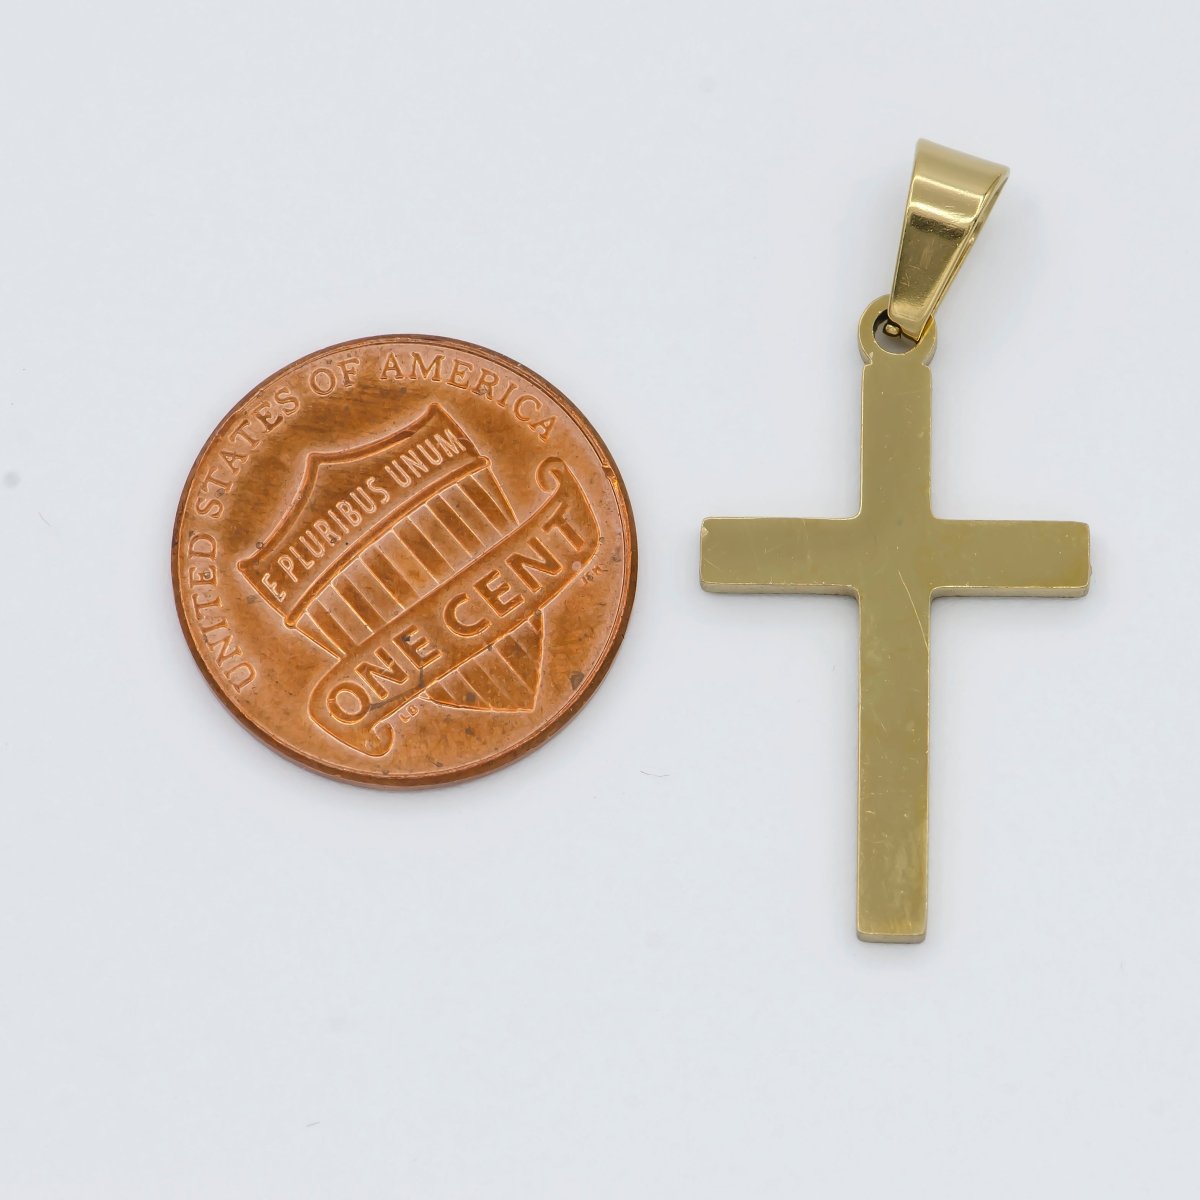 Stainless Steel Minimalist Cross Religious Symbol Pendant | P1462 - DLUXCA